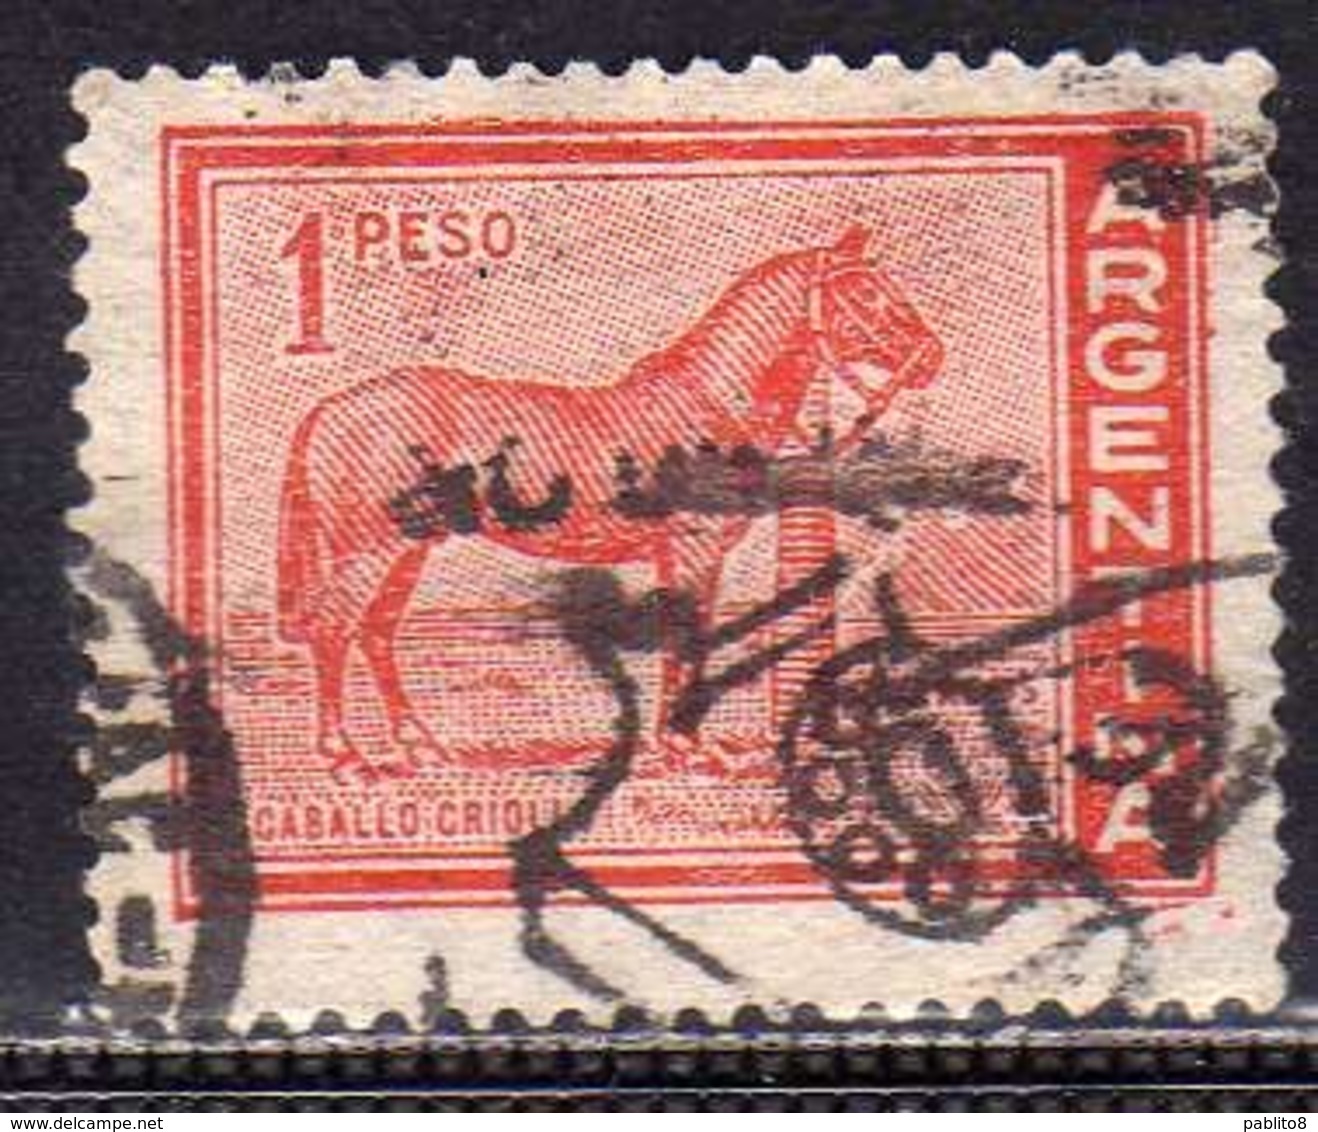 ARGENTINA 1959 1970 FAUNA 1961 ANIMALS DOMESTIC HORSE CAVALLO CABALLO CRIOLLO ANIMALI PESO 1p USATO USED OBLITERE' - Usati